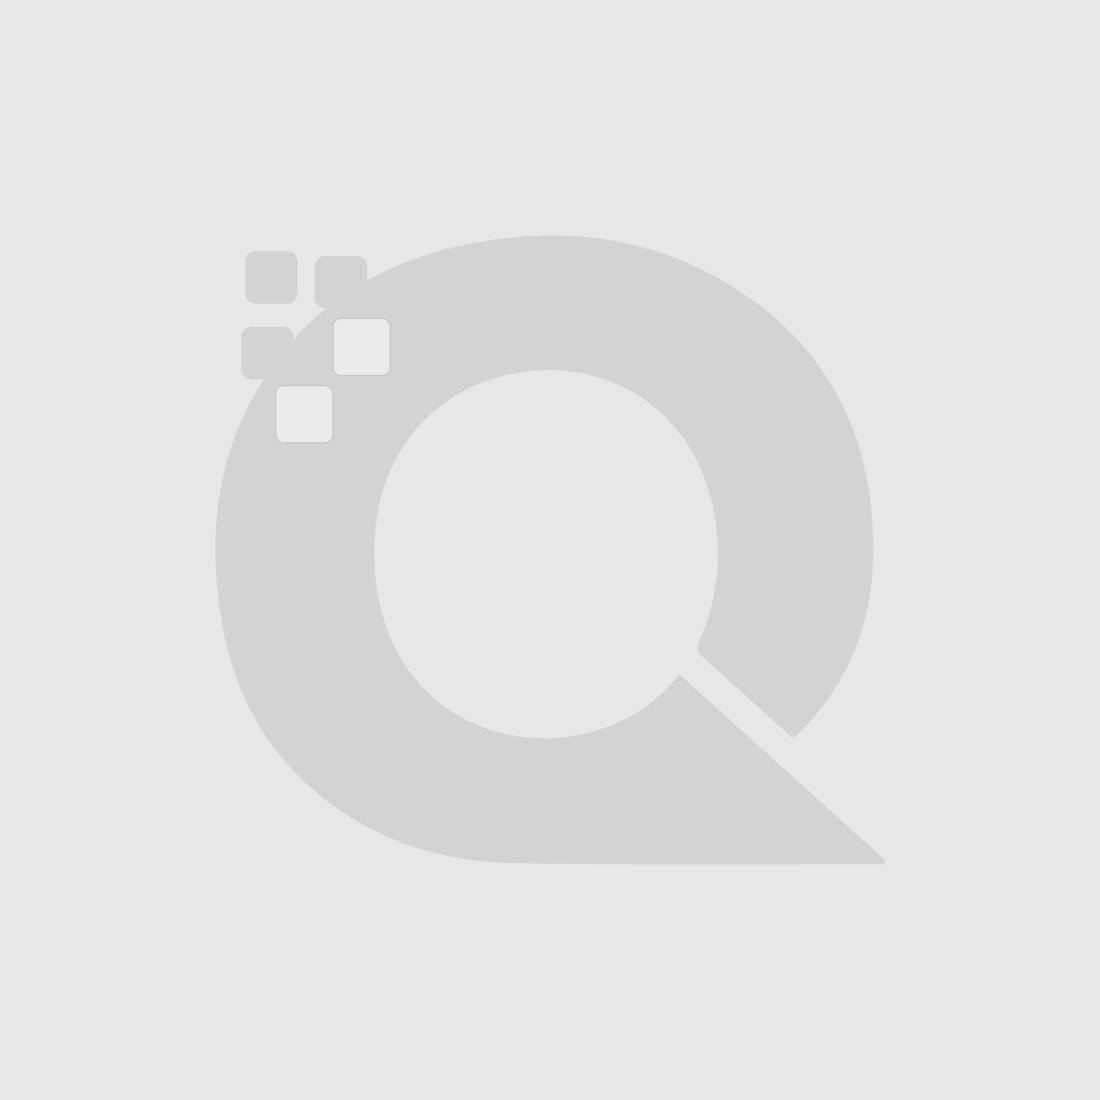 Guerniss Paris Velvet Matte Lipstick - GS020 - 3.5g